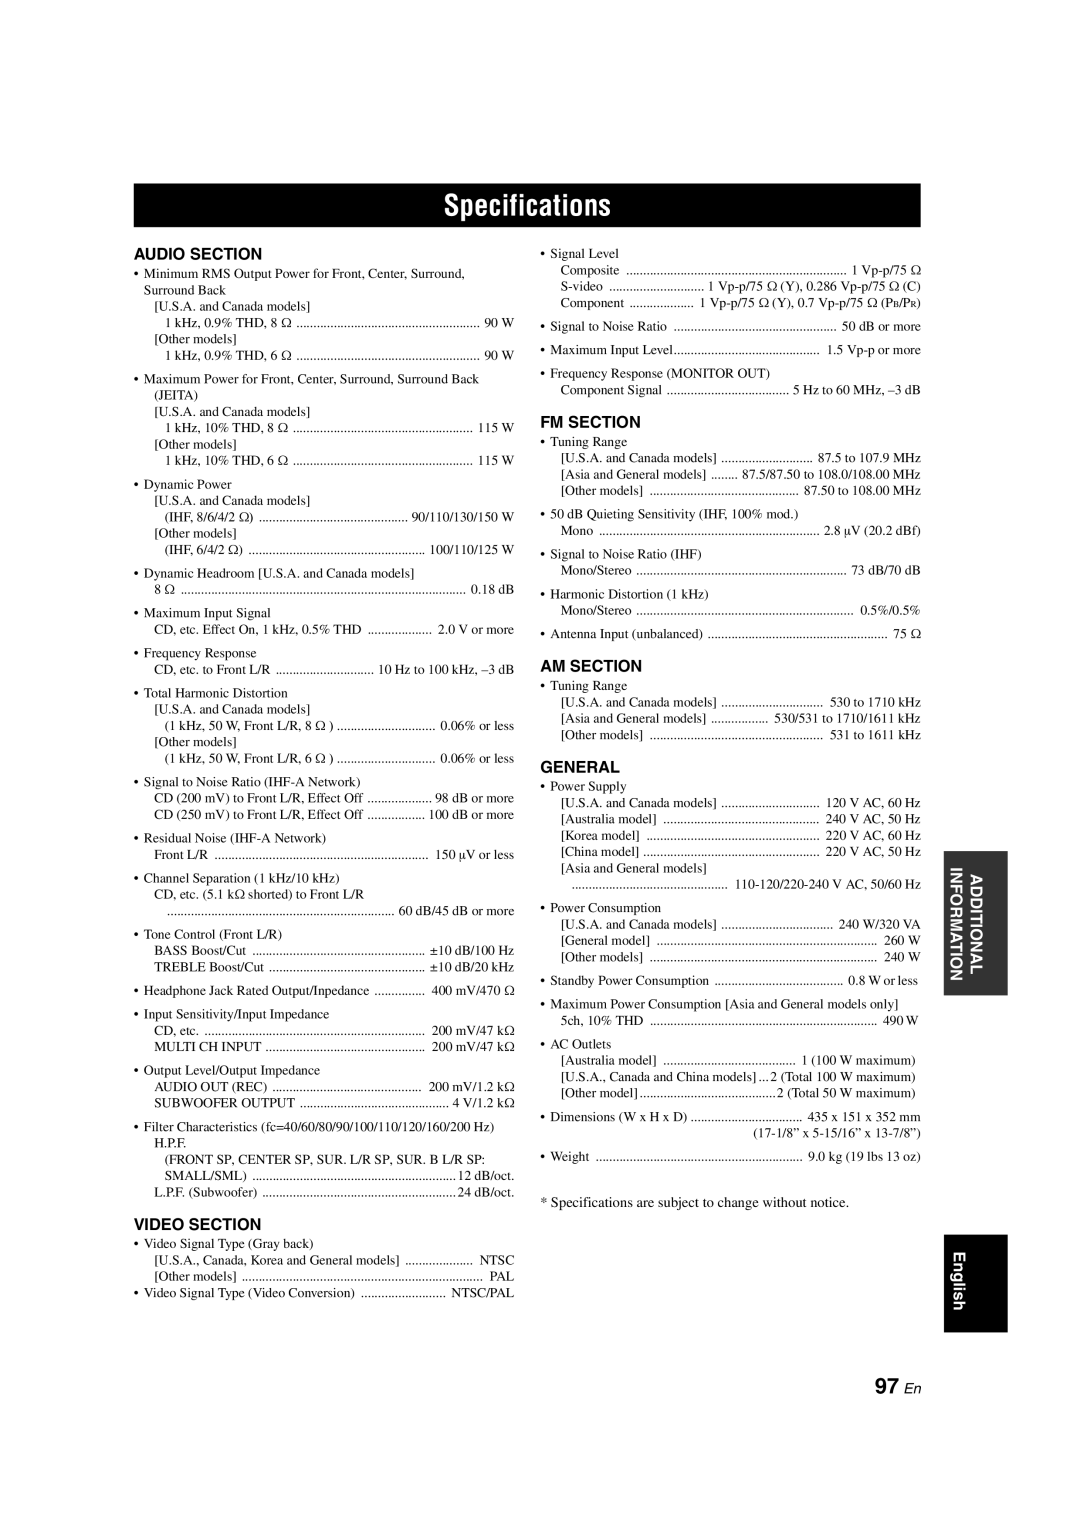 Yamaha RX-V563 owner manual Specifications, 97 En, Audio Section, Video Section, Fm Section, Am Section, General 